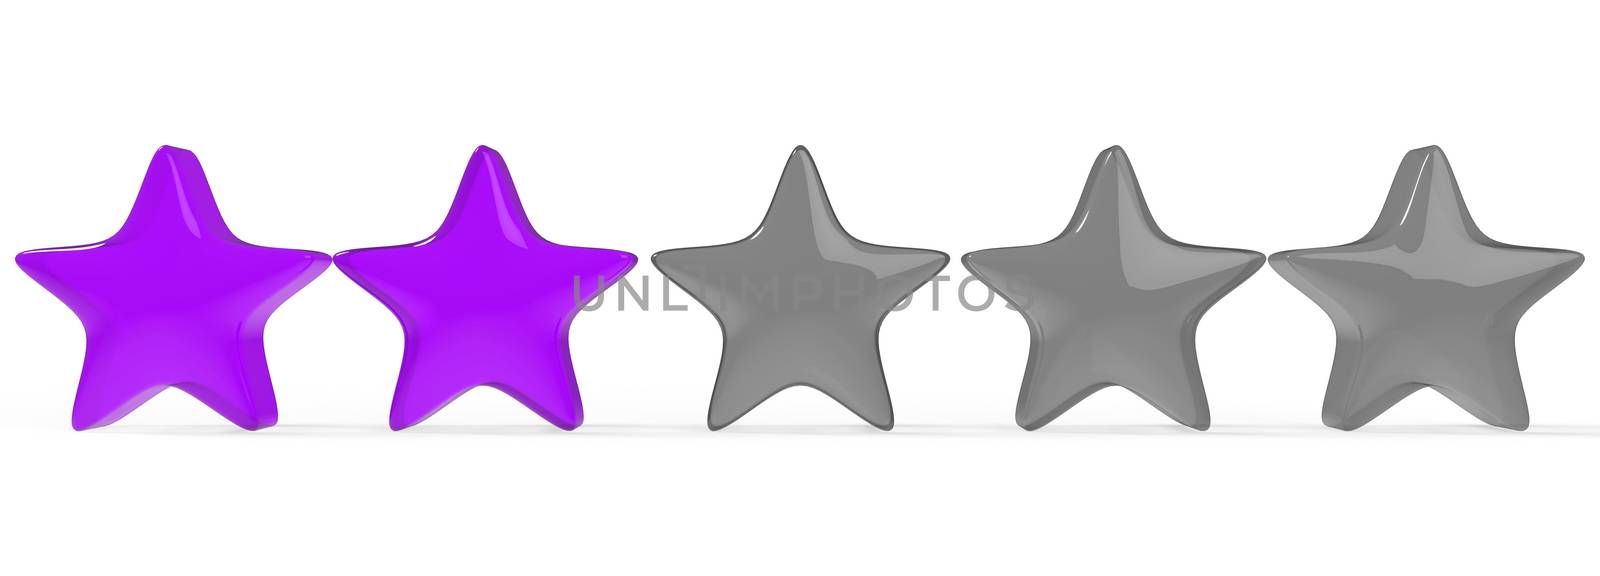 3d violet two star on color background. Render and illustration of golden star for premium